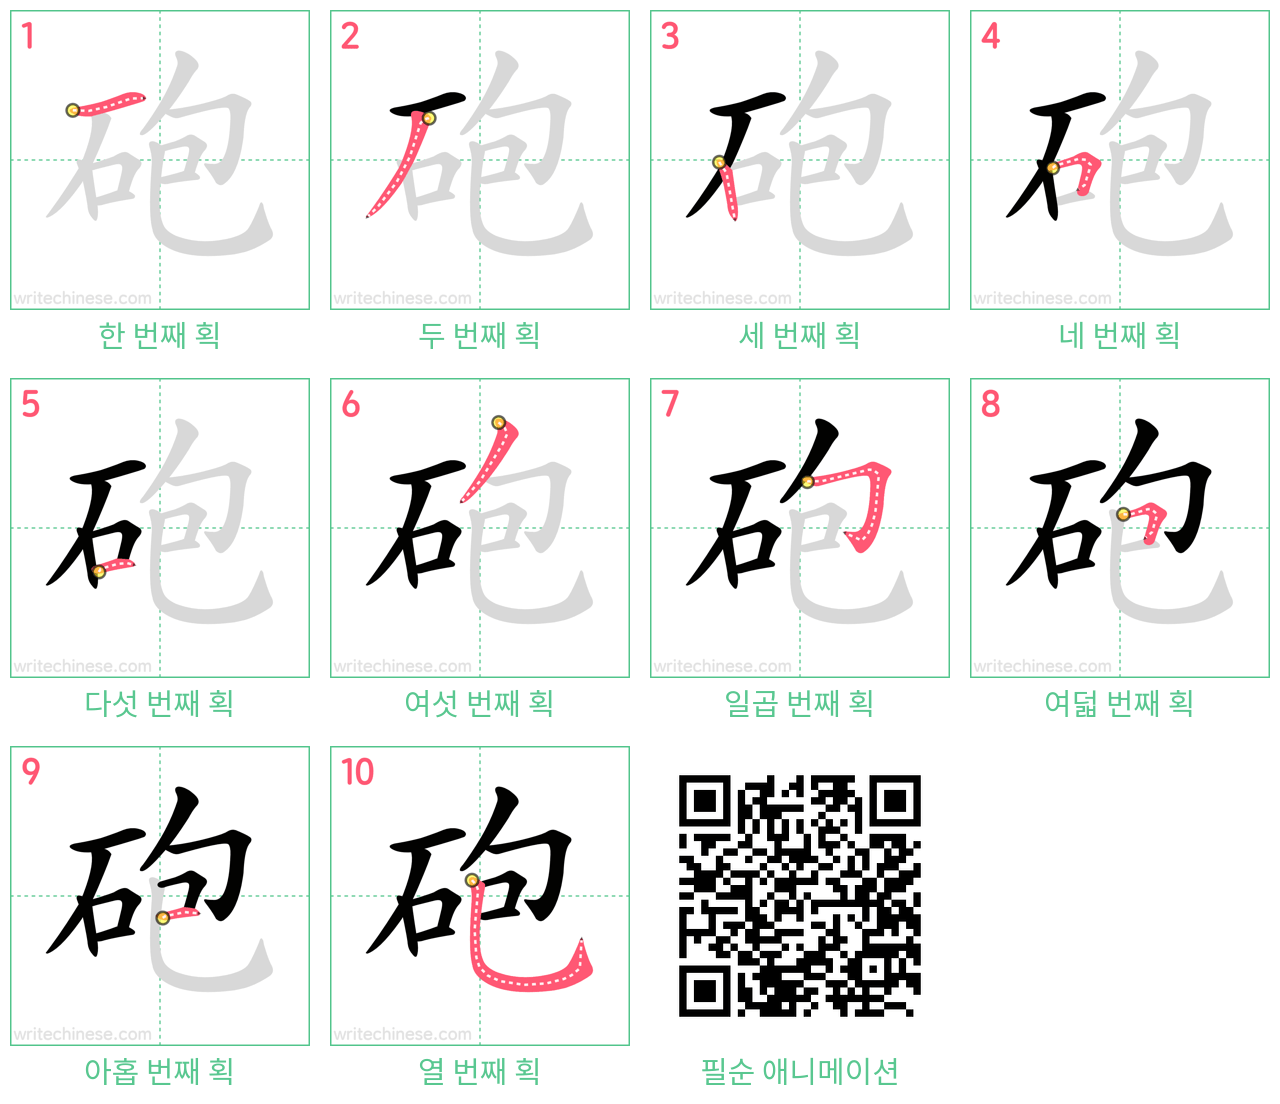 砲 step-by-step stroke order diagrams